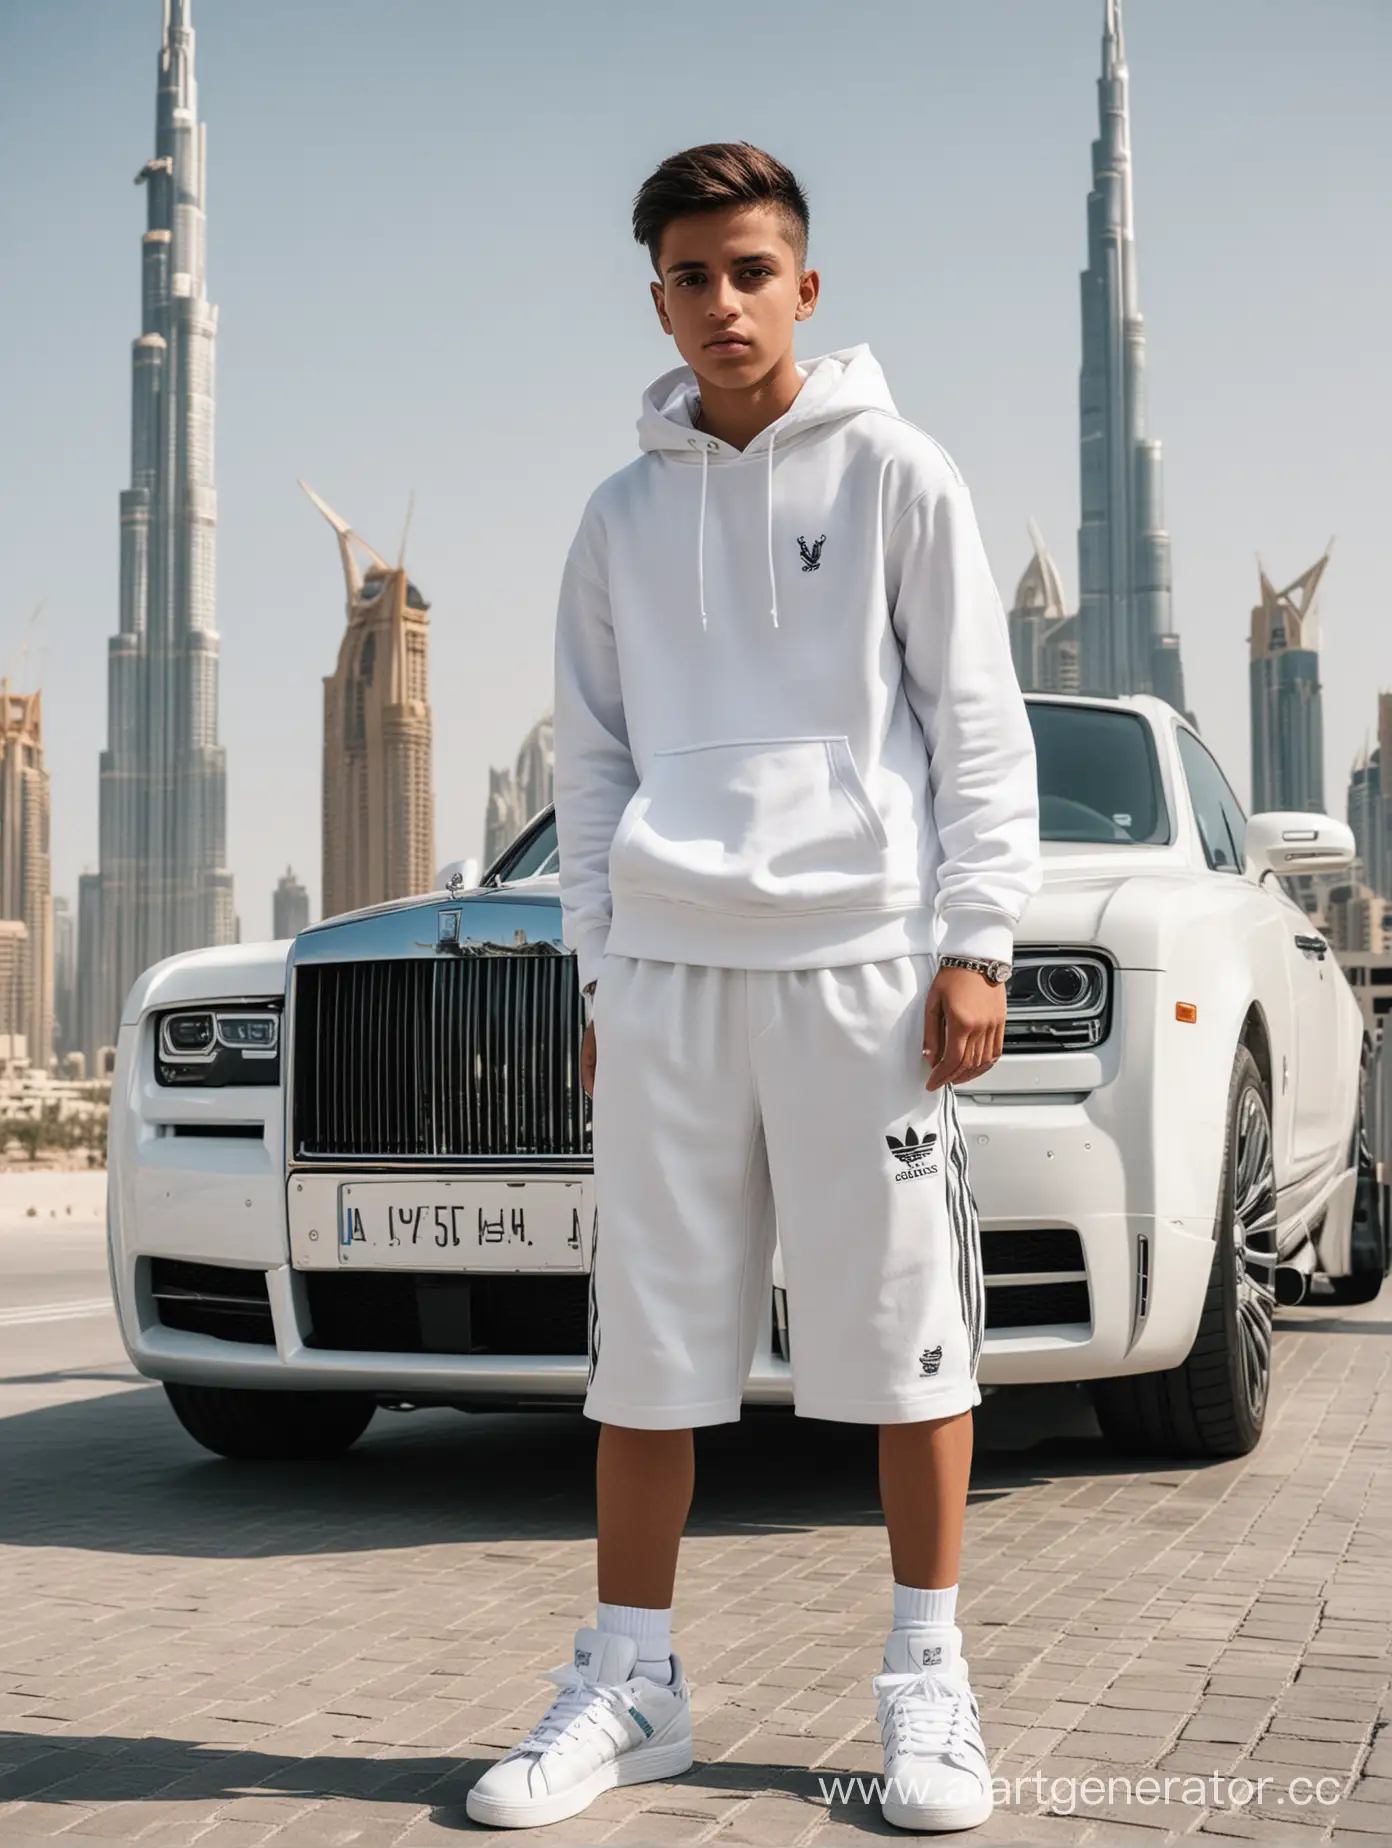 Teenage-Boy-in-Urban-Fashion-by-Dubai-Skyline-with-Rolls-Royce